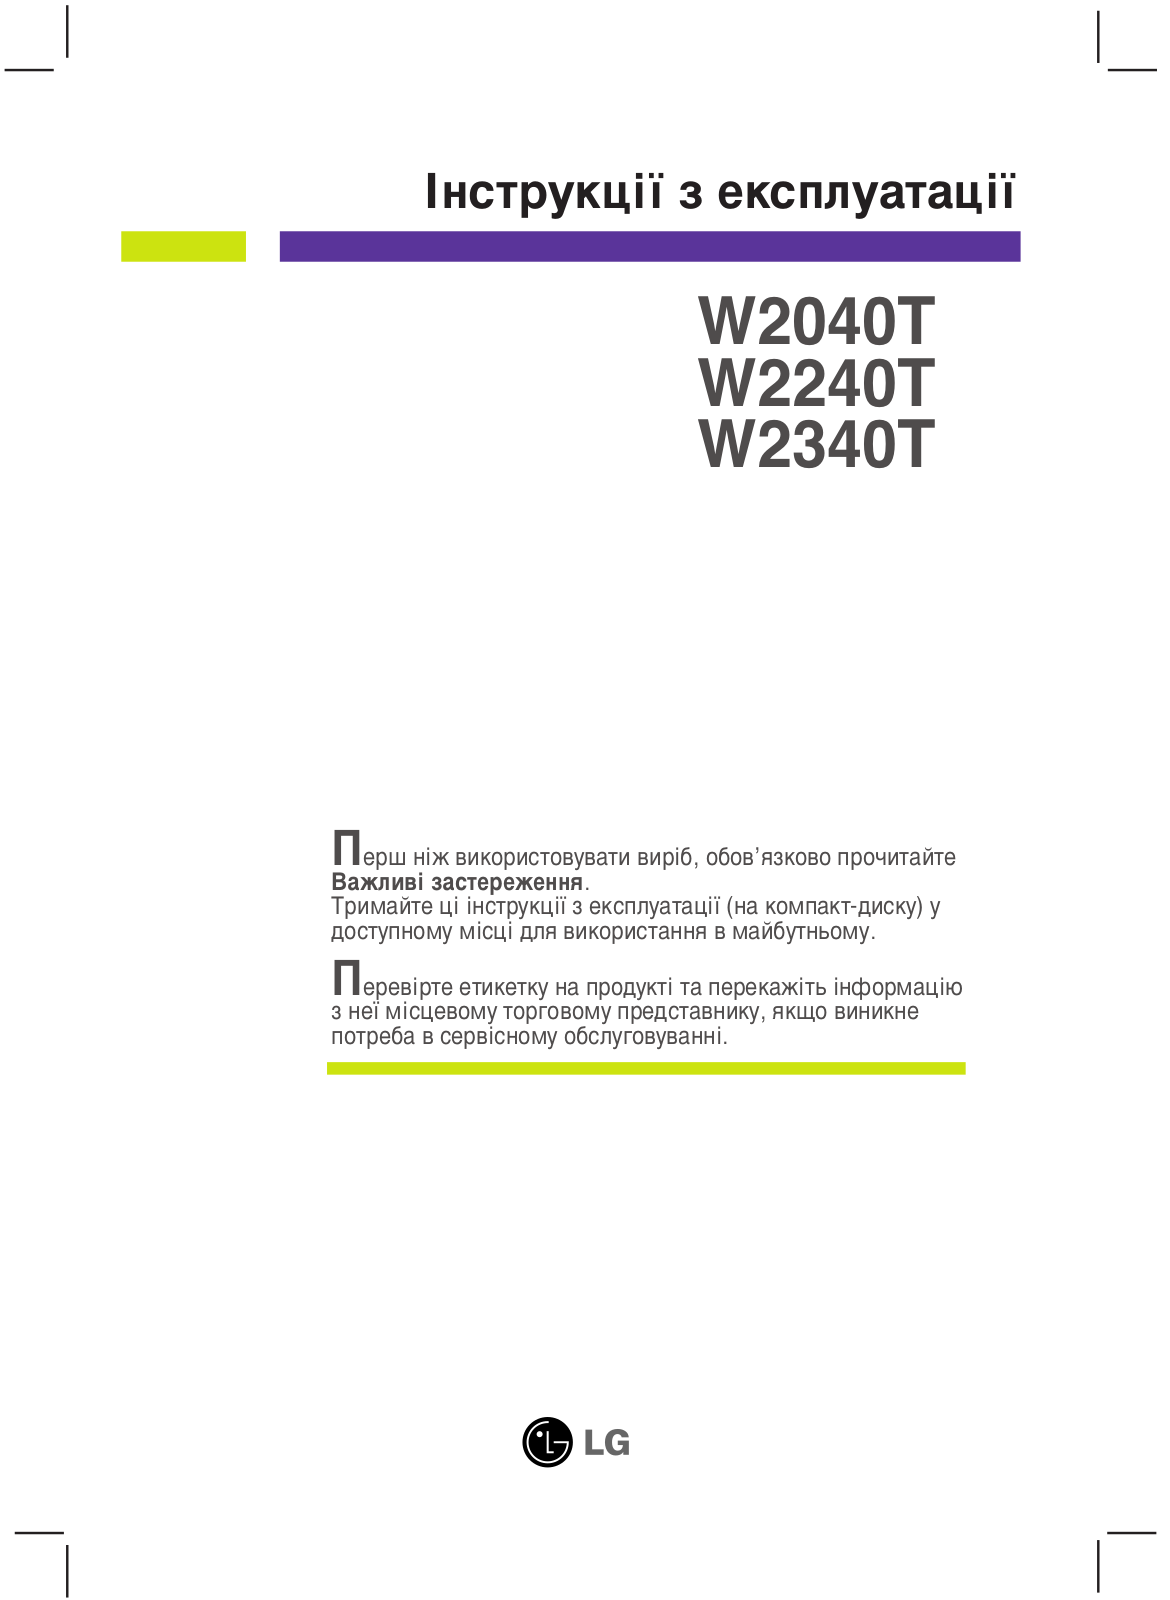 LG W2240T-PN User Manual